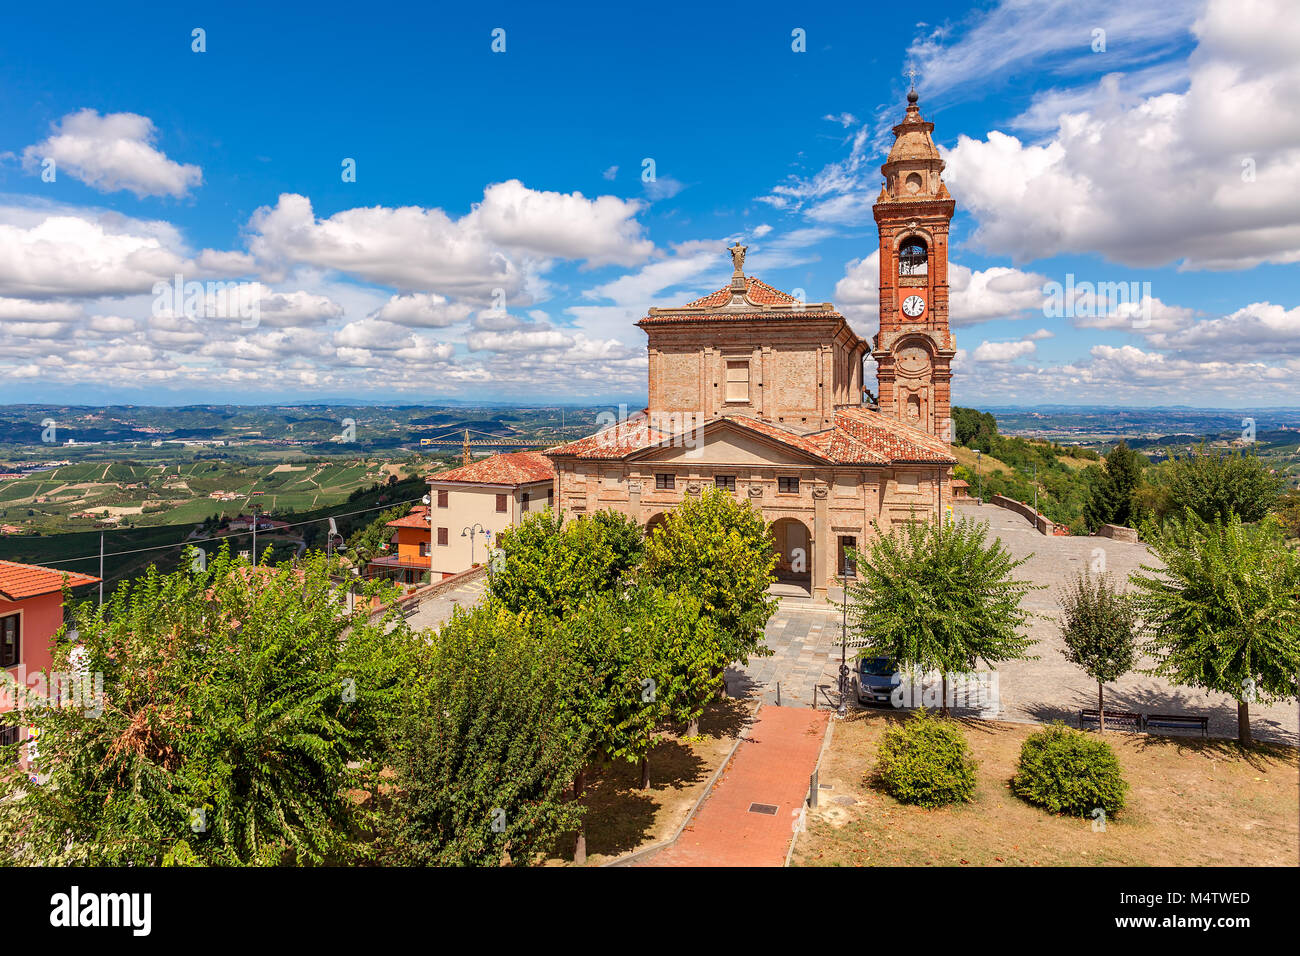 Alt-katholischen Kirche unter der schönen blauen Himmel mit weißen Wolken in der kleinen Stadt von Diano d'Alba in Piemont, Norditalien. Stockfoto